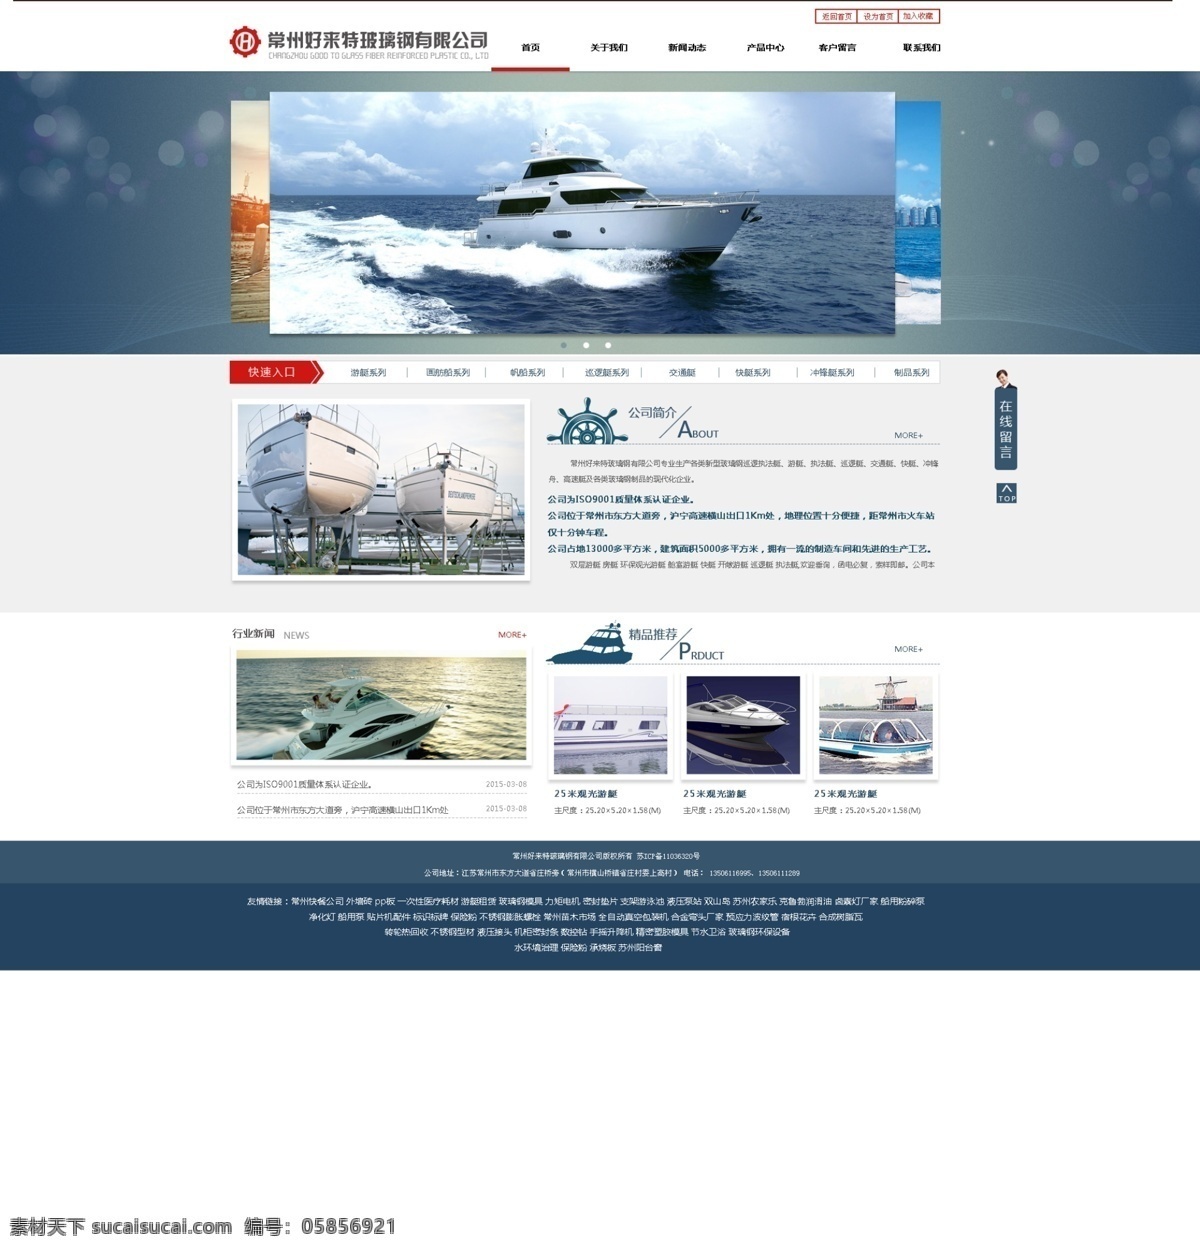 造船厂网站 玻璃钢 中文网站 网站设计 模板 造船厂 web 界面设计 中文模板